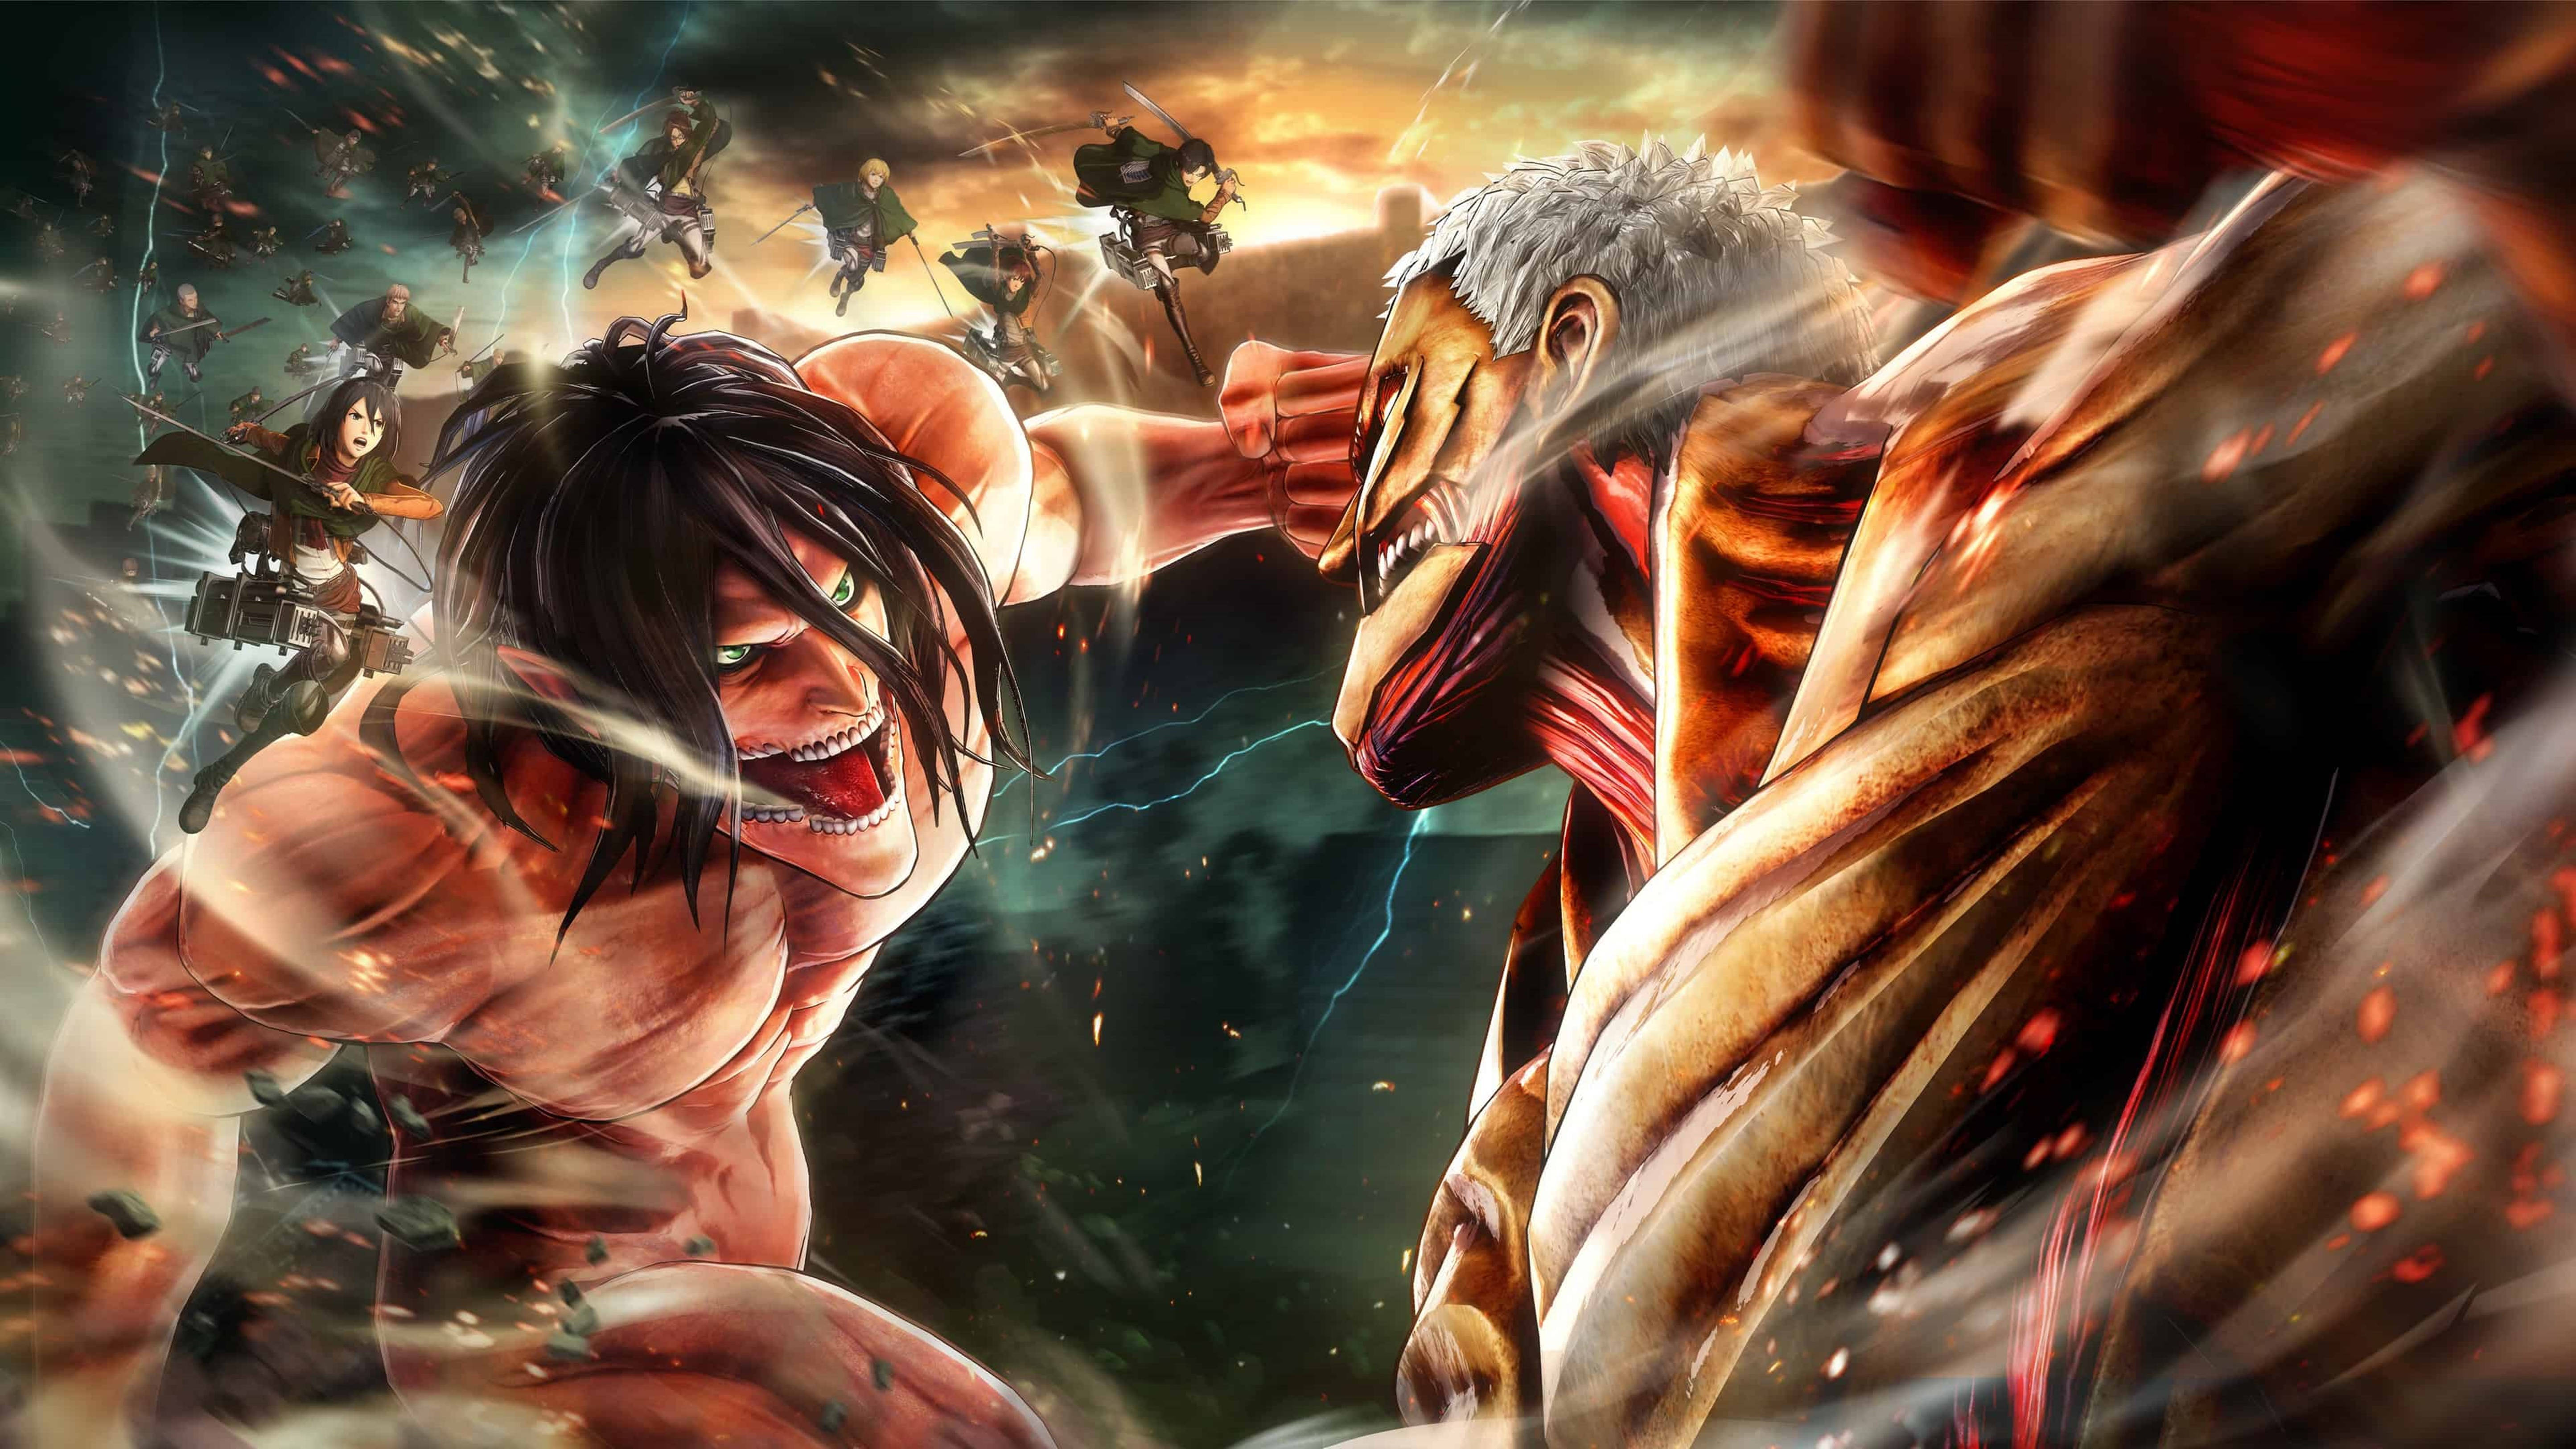 Download Attack On Titans 4k Titan Fight Wallpaper 